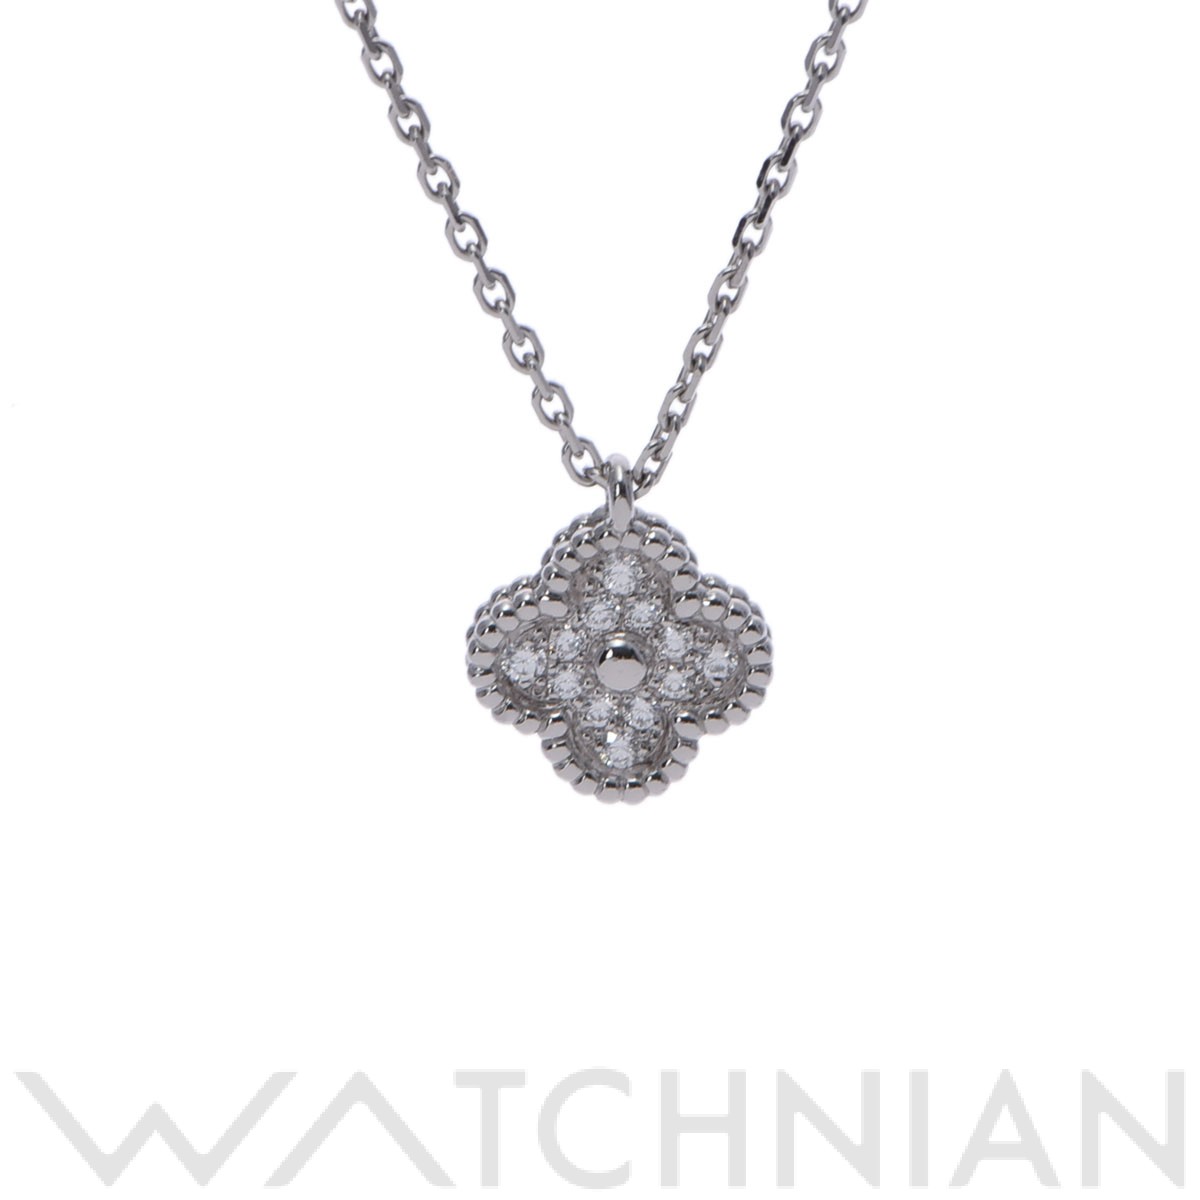 ヴァンクリーフ&アーペル ネックレス スウィートアルハンブラ ネックレス ダイヤモンド 0.08ct K18WG VCARO85900 ジュエリーネックレス